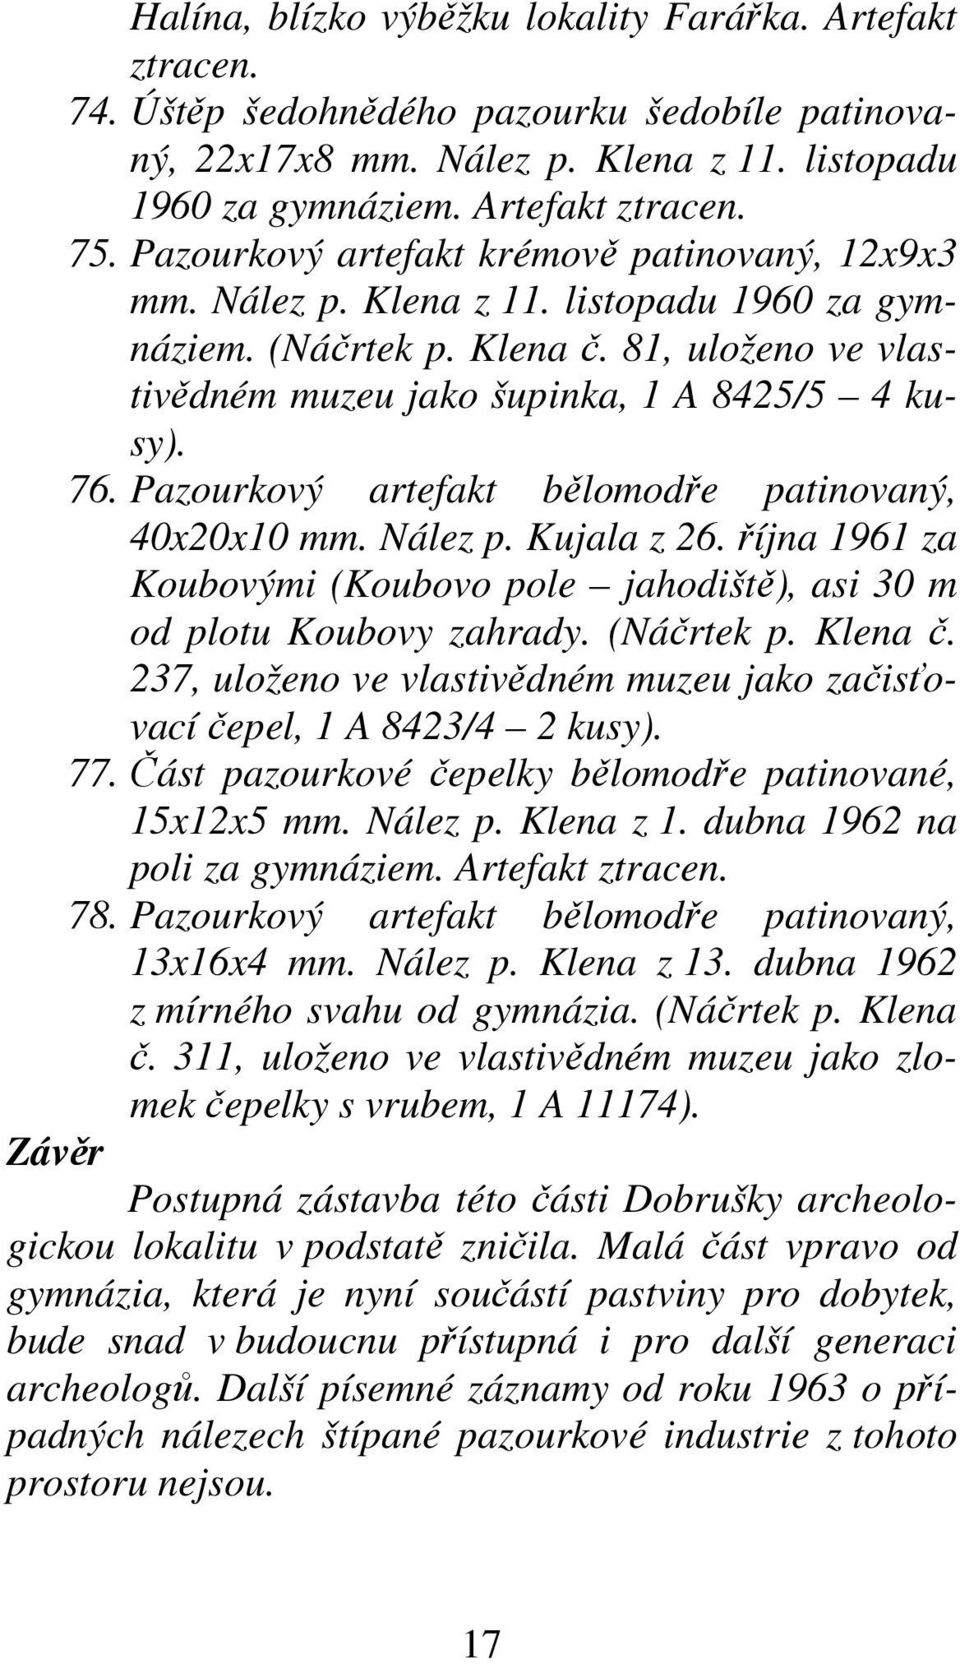 Pazourkový artefakt bělomodře patinovaný, 40x20x10 mm. Nález p. Kujala z 26. října 1961 za Koubovými (Koubovo pole jahodiště), asi 30 m od plotu Koubovy zahrady. (Náčrtek p. Klena č.